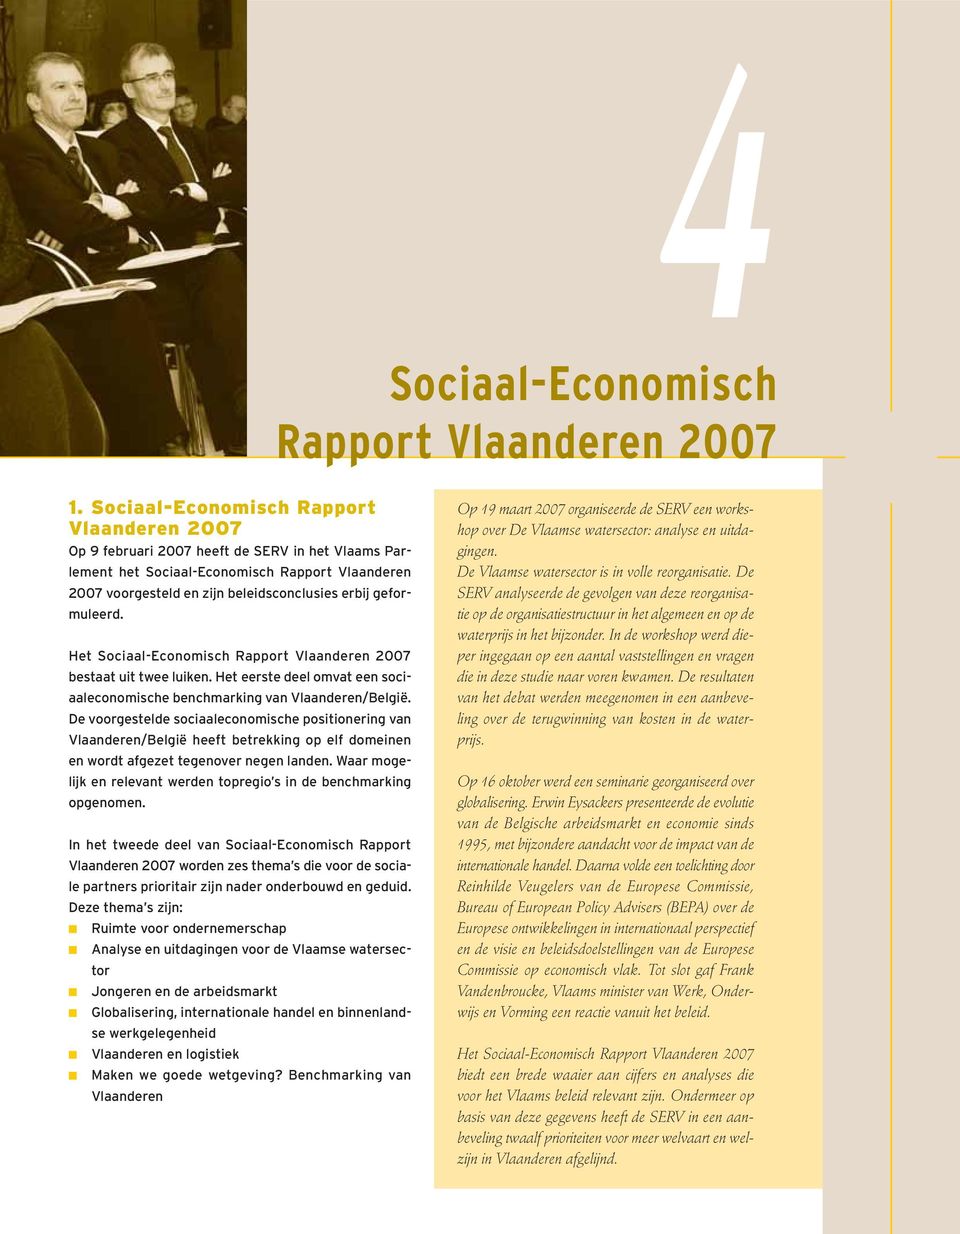 geformuleerd. Het Sociaal-Economisch Rapport Vlaanderen 2007 bestaat uit twee luiken. Het eerste deel omvat een sociaaleconomische benchmarking van Vlaanderen/België.